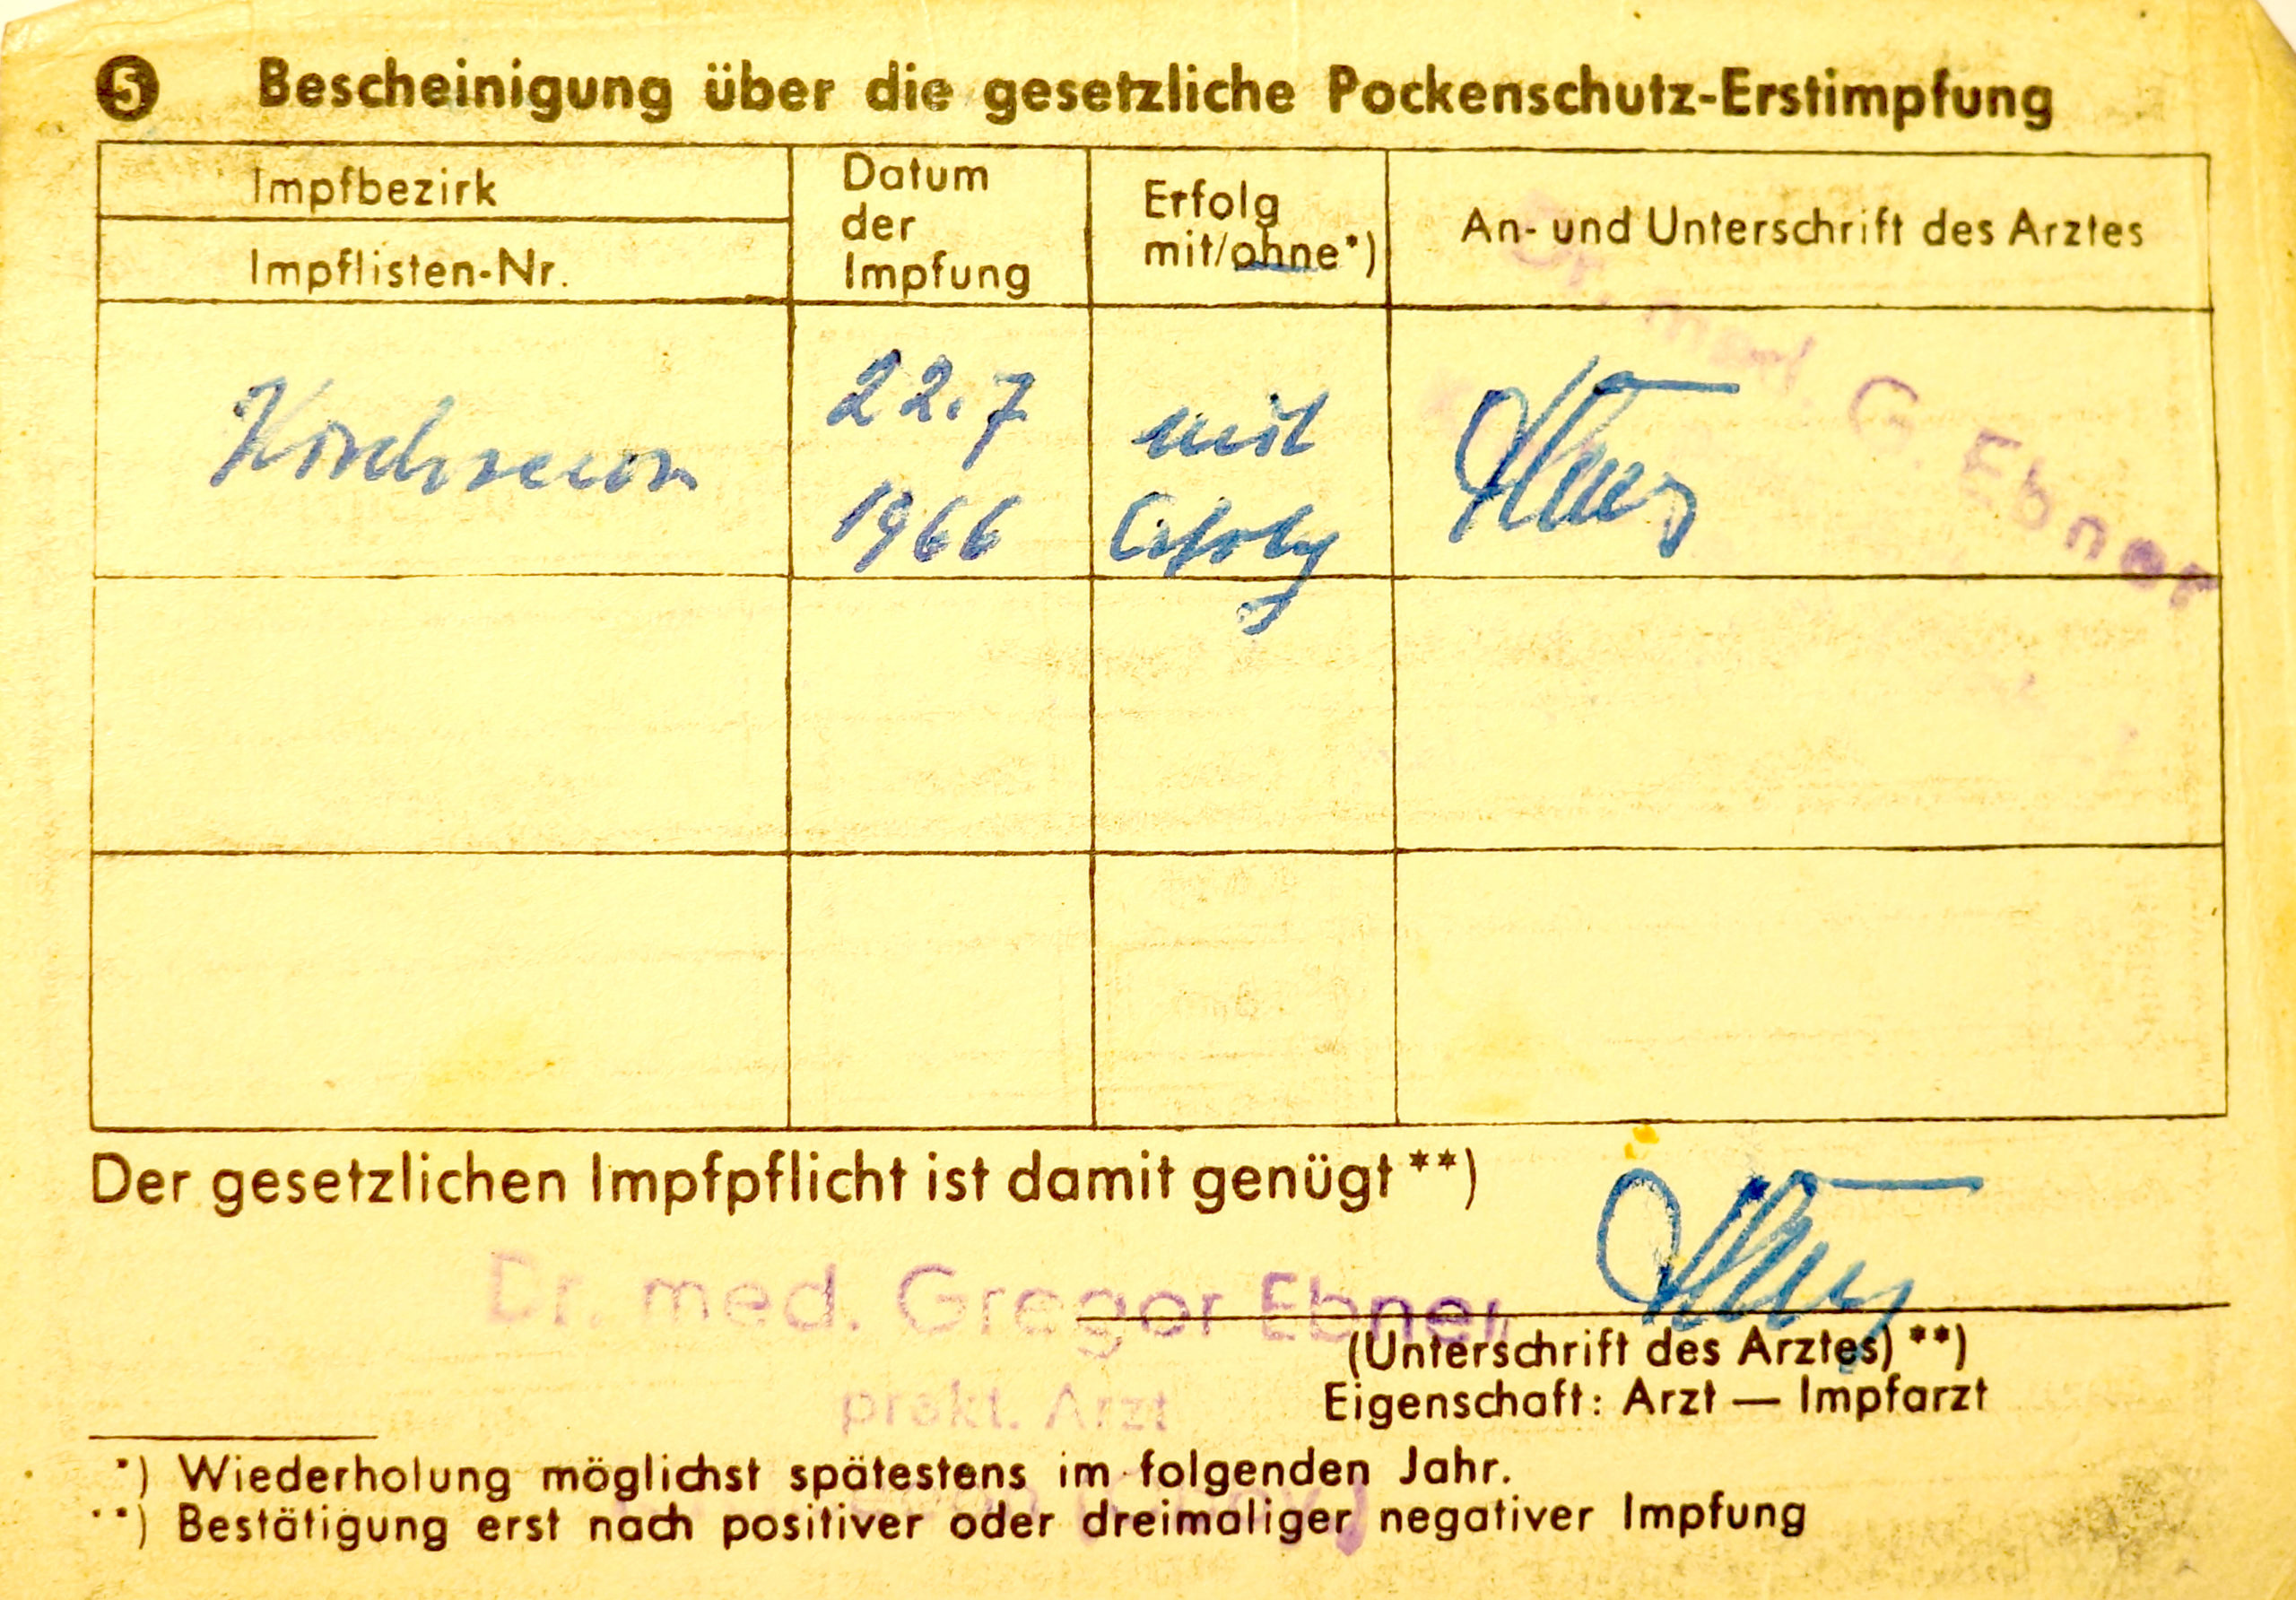 Impfpass mit Stempel "Dr. med. Gregor Ebner" und Unterschrift. Pockenimpfung vom 22.7.1966, Kirchseeon (Quelle: de.wikipedia.org)